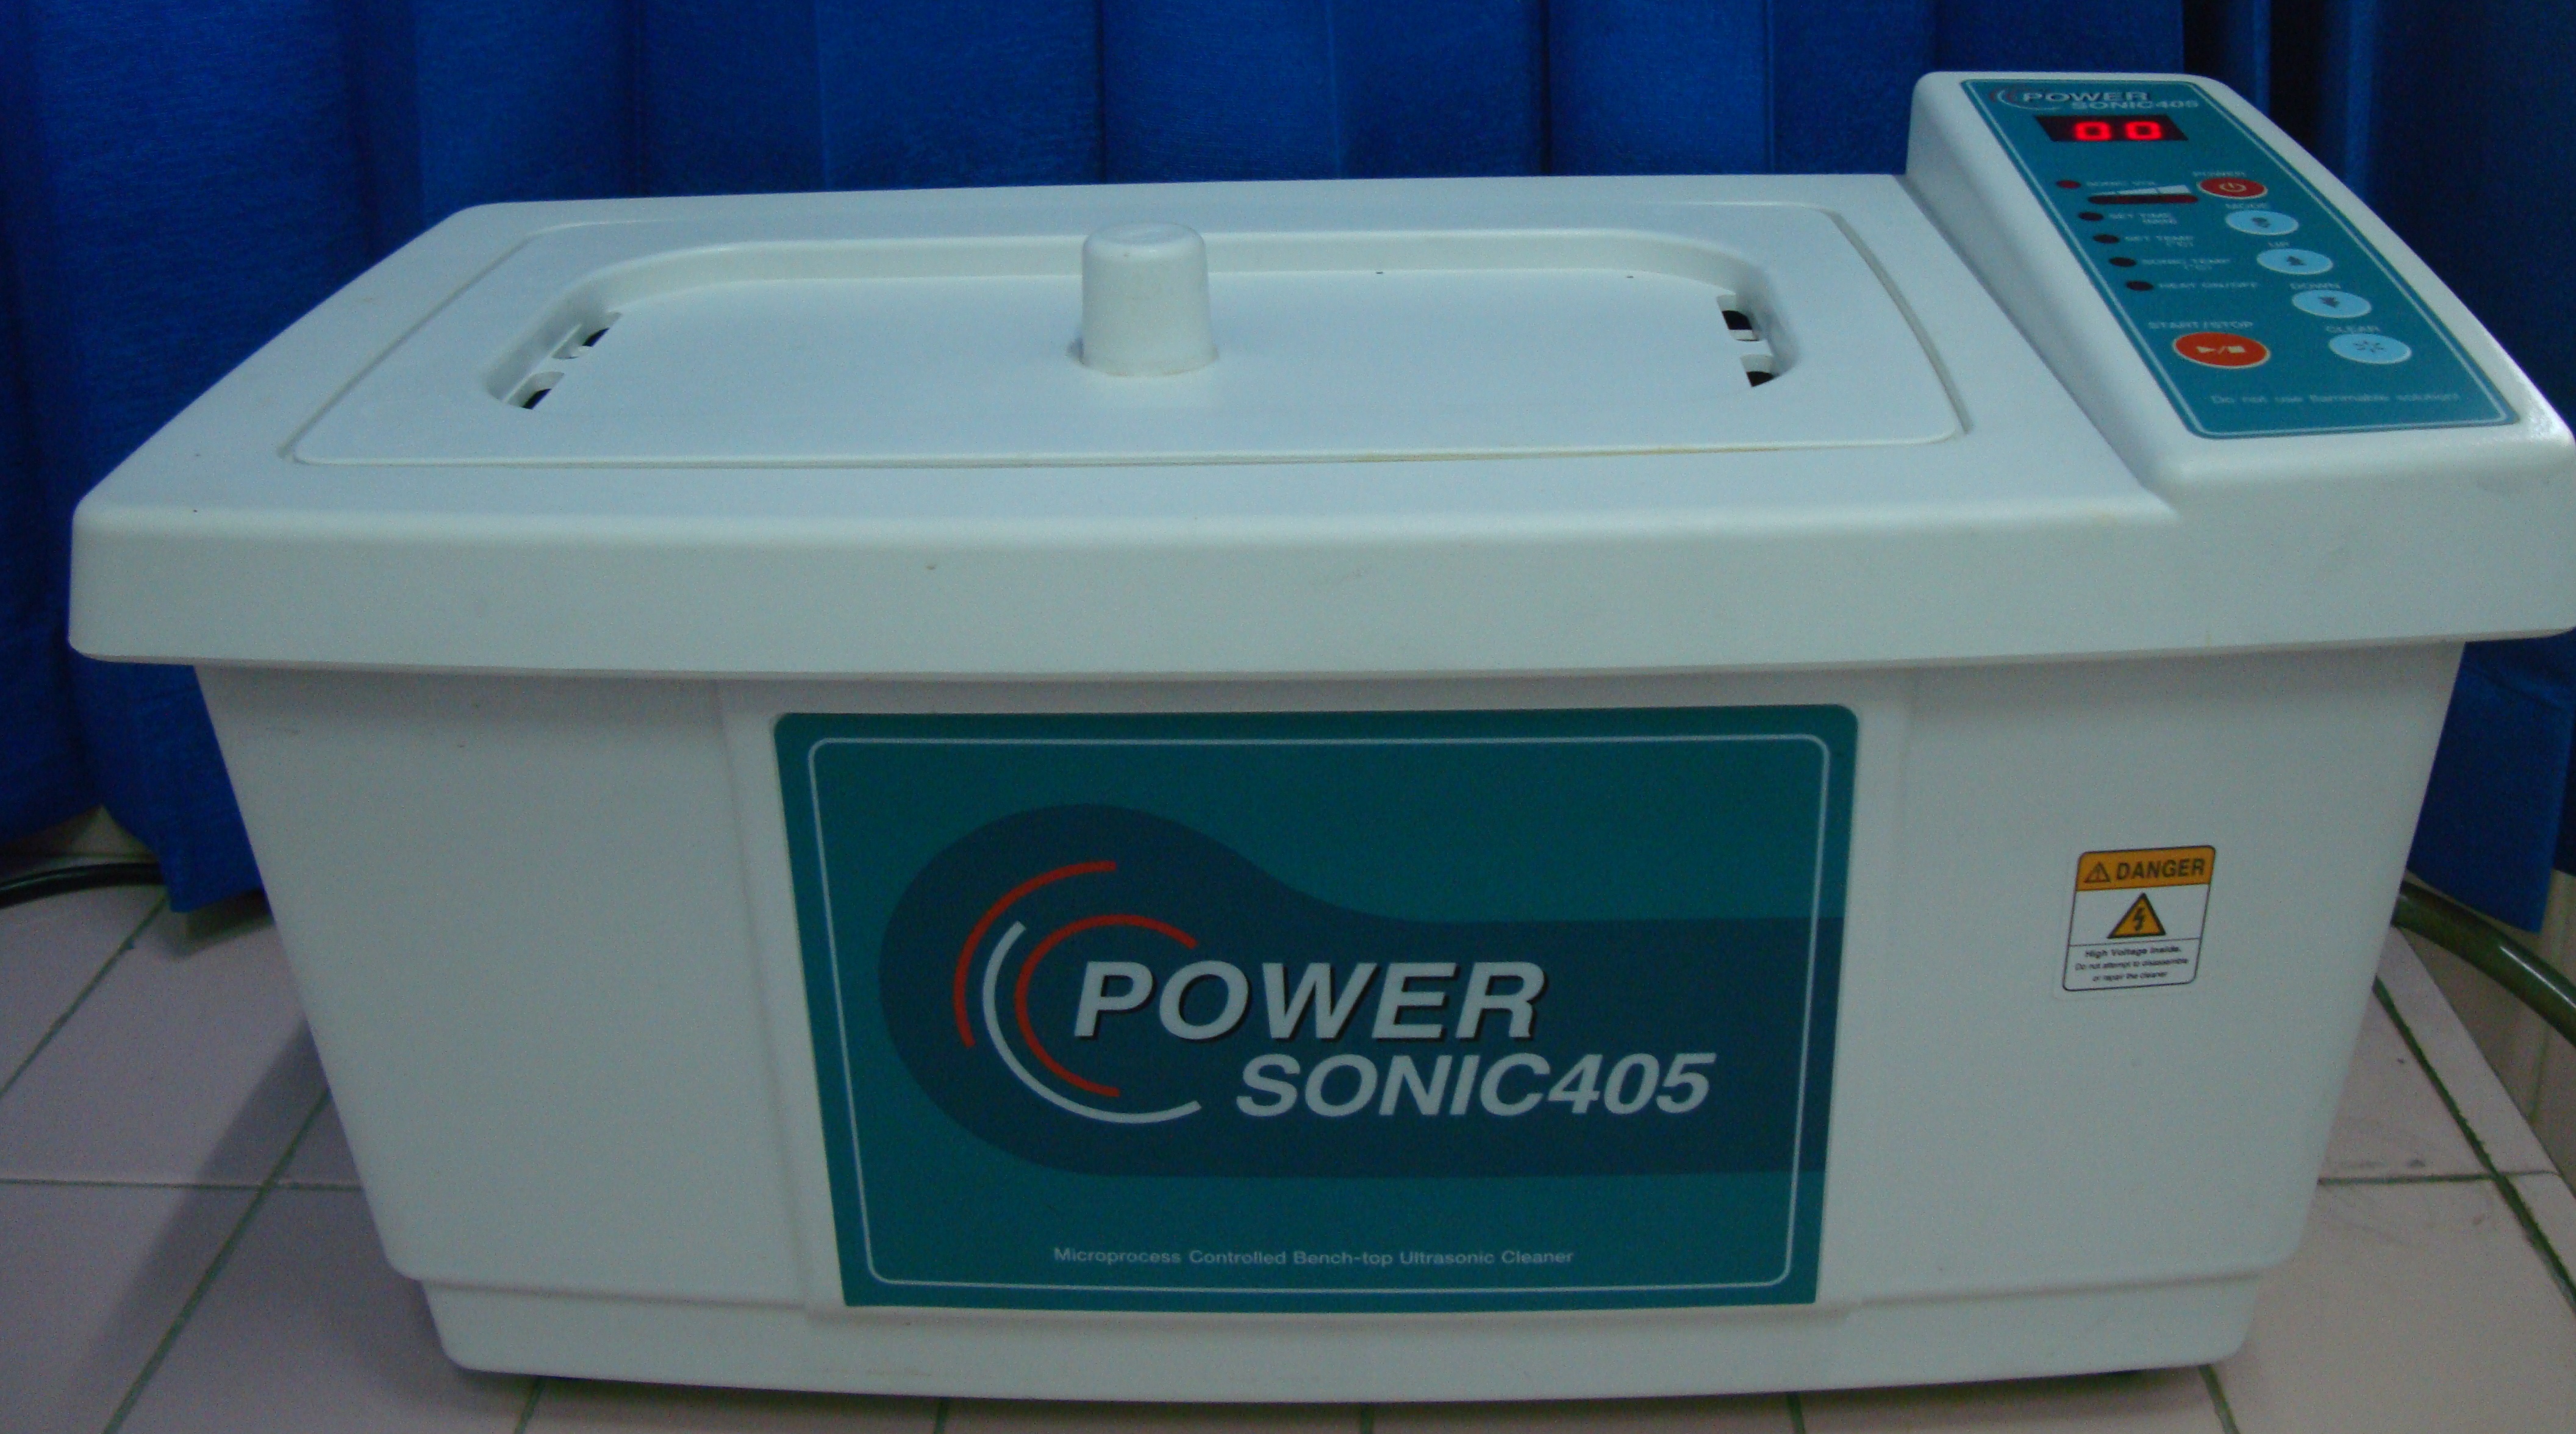 Ultrasonic Cleaner Merk Power Sonic 405